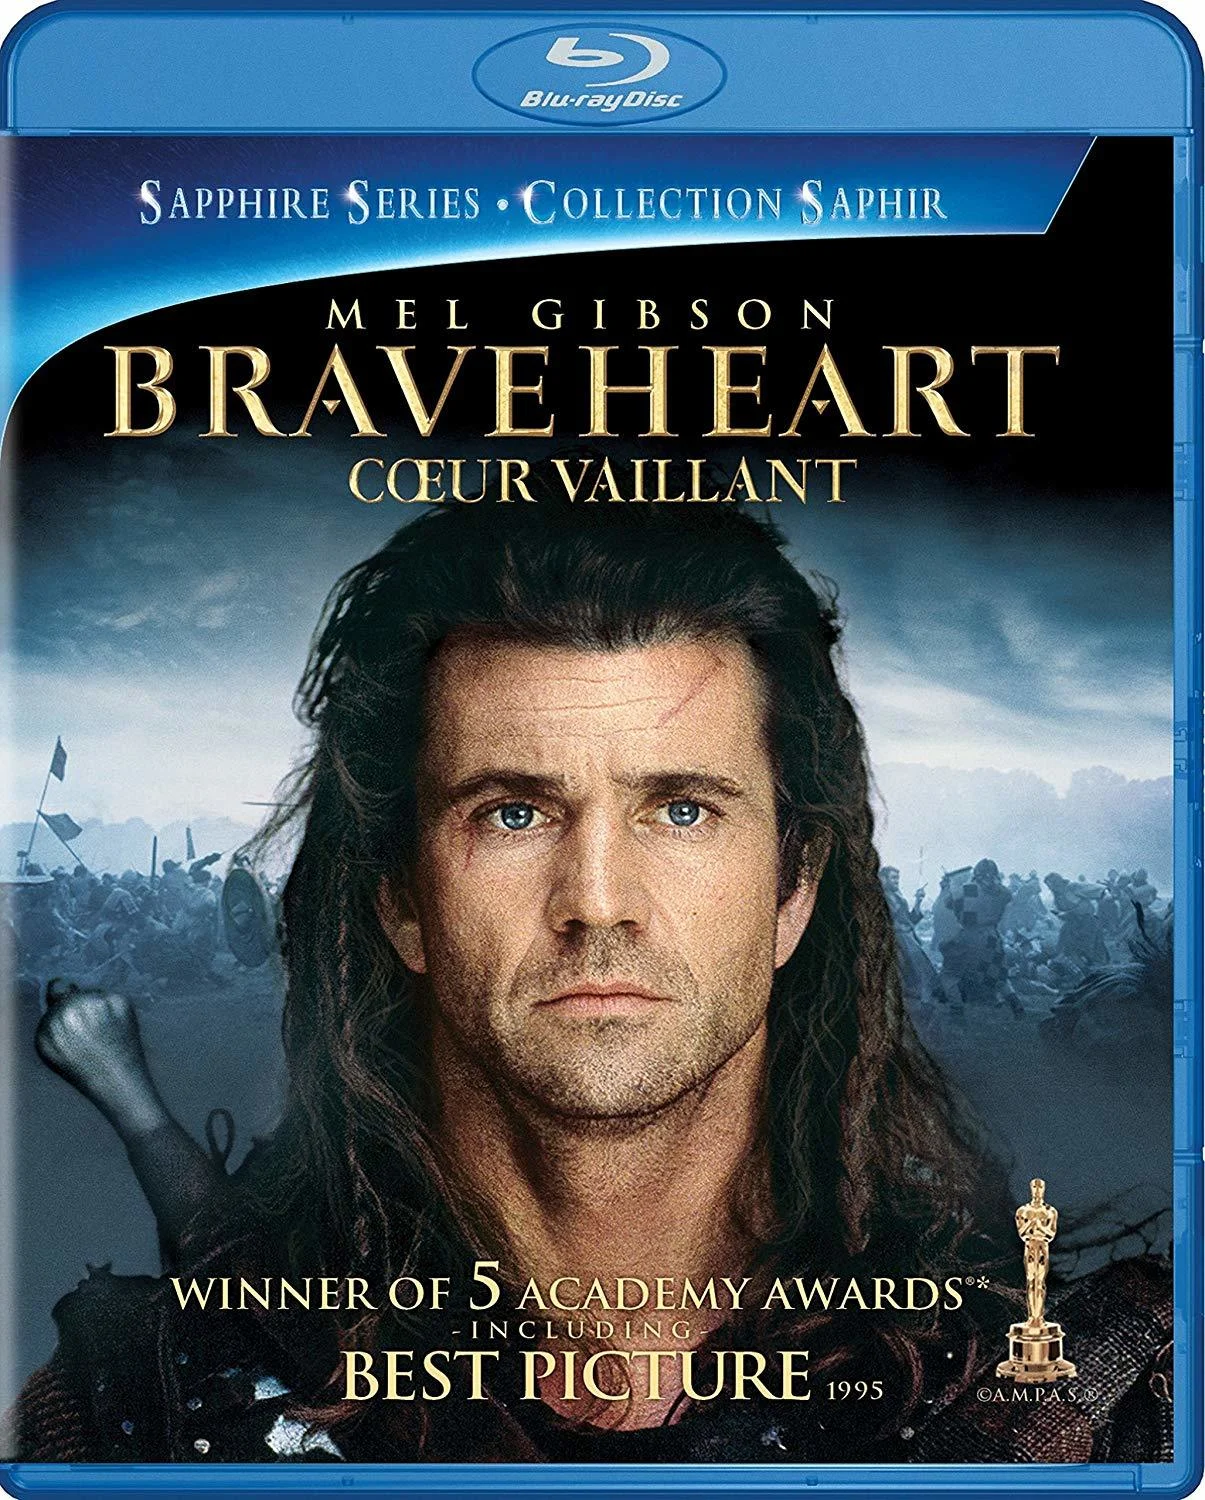 Braveheart (Blu-ray) on MovieShack